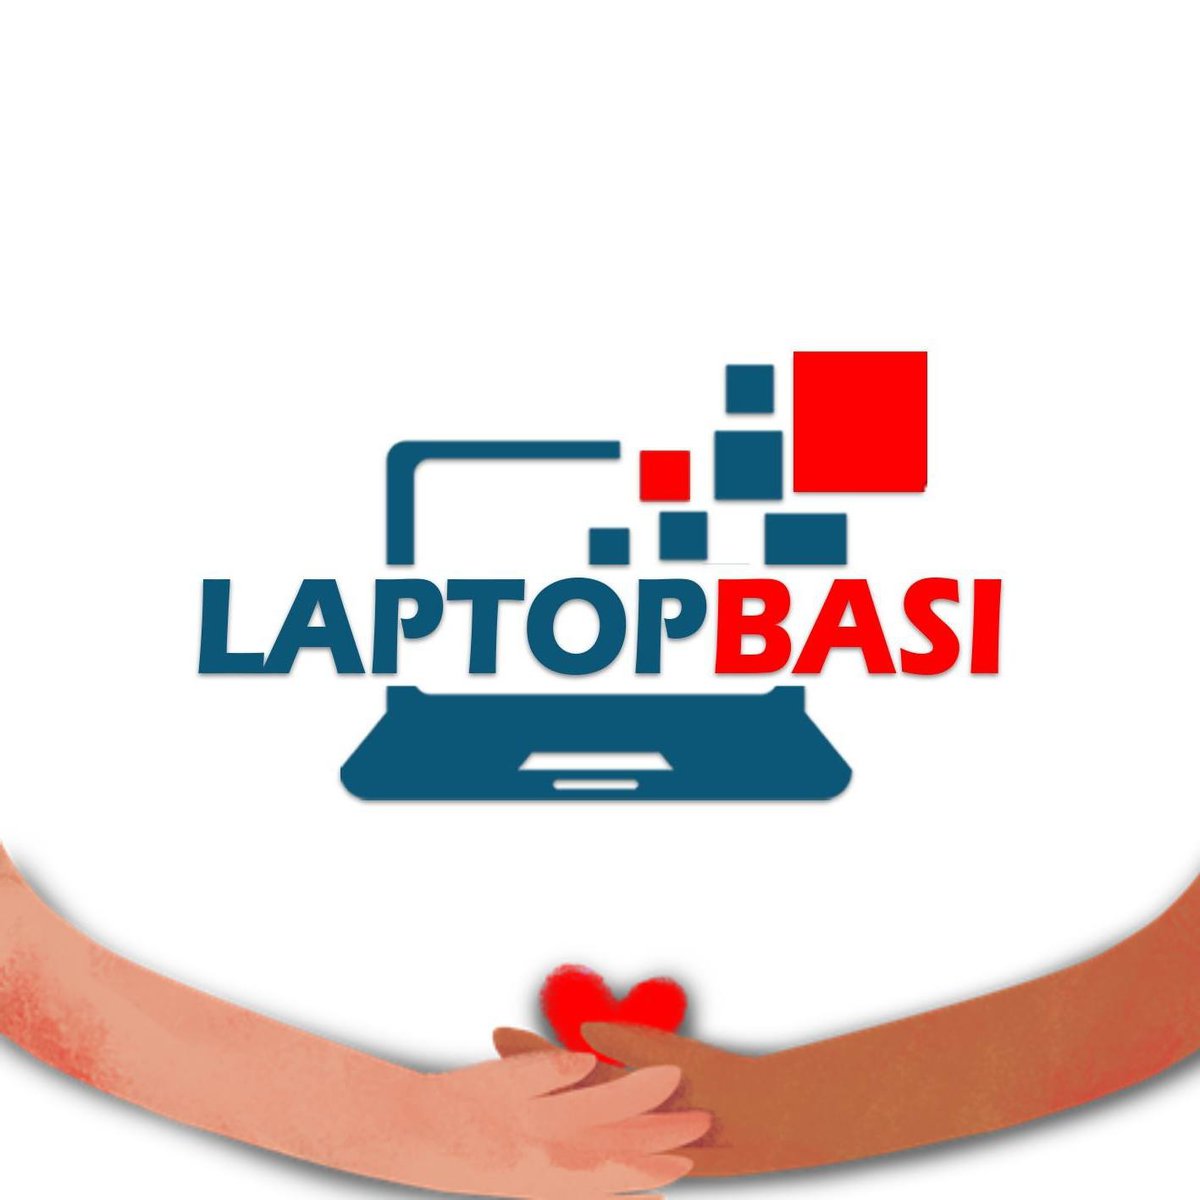 LaptopBasi